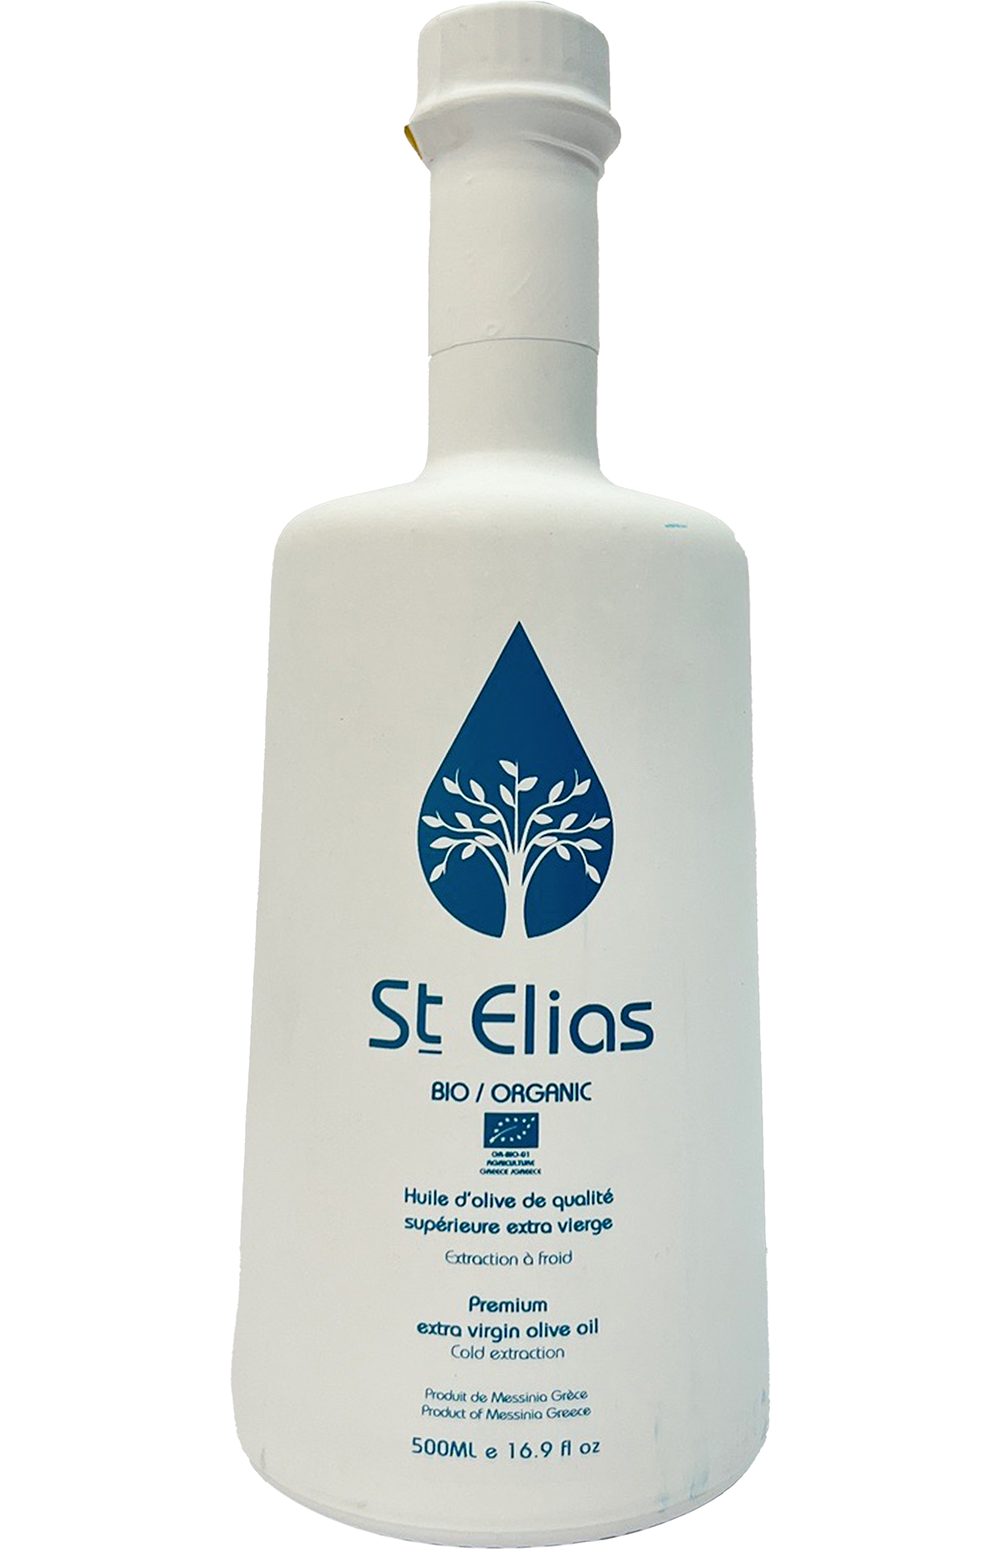 St. Elias Bio/Organic